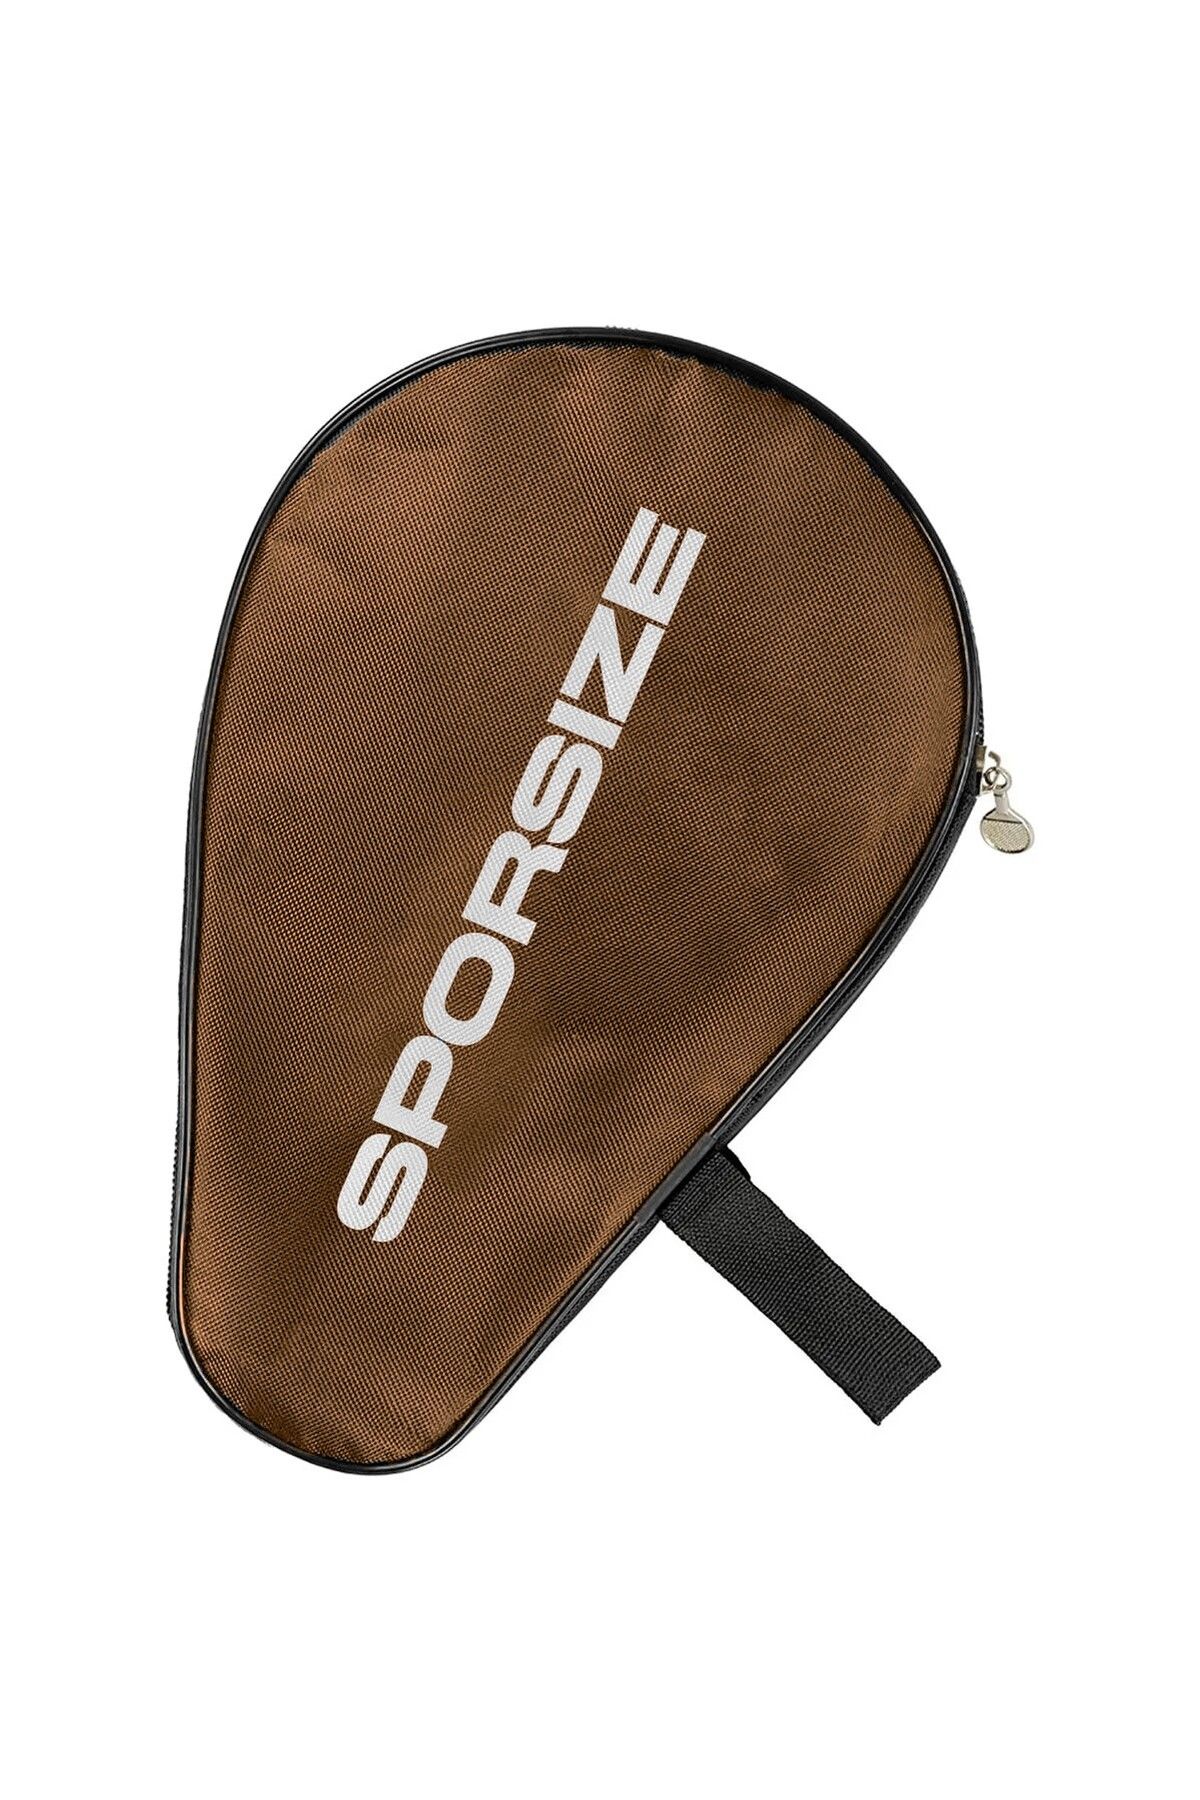 Sporsize Table Tennis Racket Cover Masa Tenisi Raketi Kılıfı Çantası Kahverengi